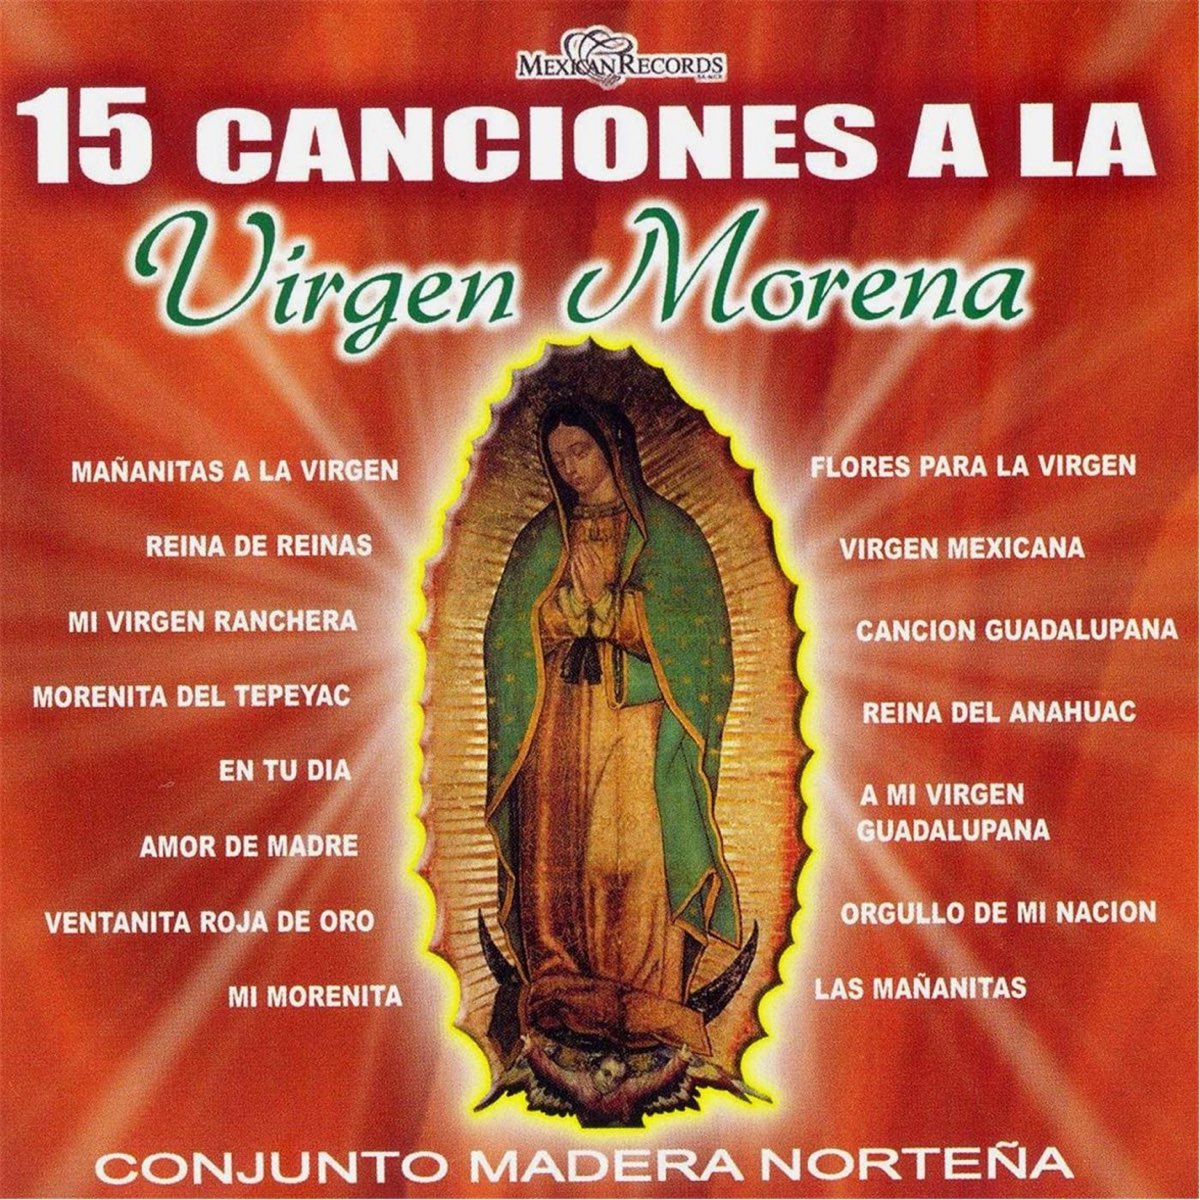 15 Canciones a la Virgen Morena by Conjunto Madera Norteña on Apple Music